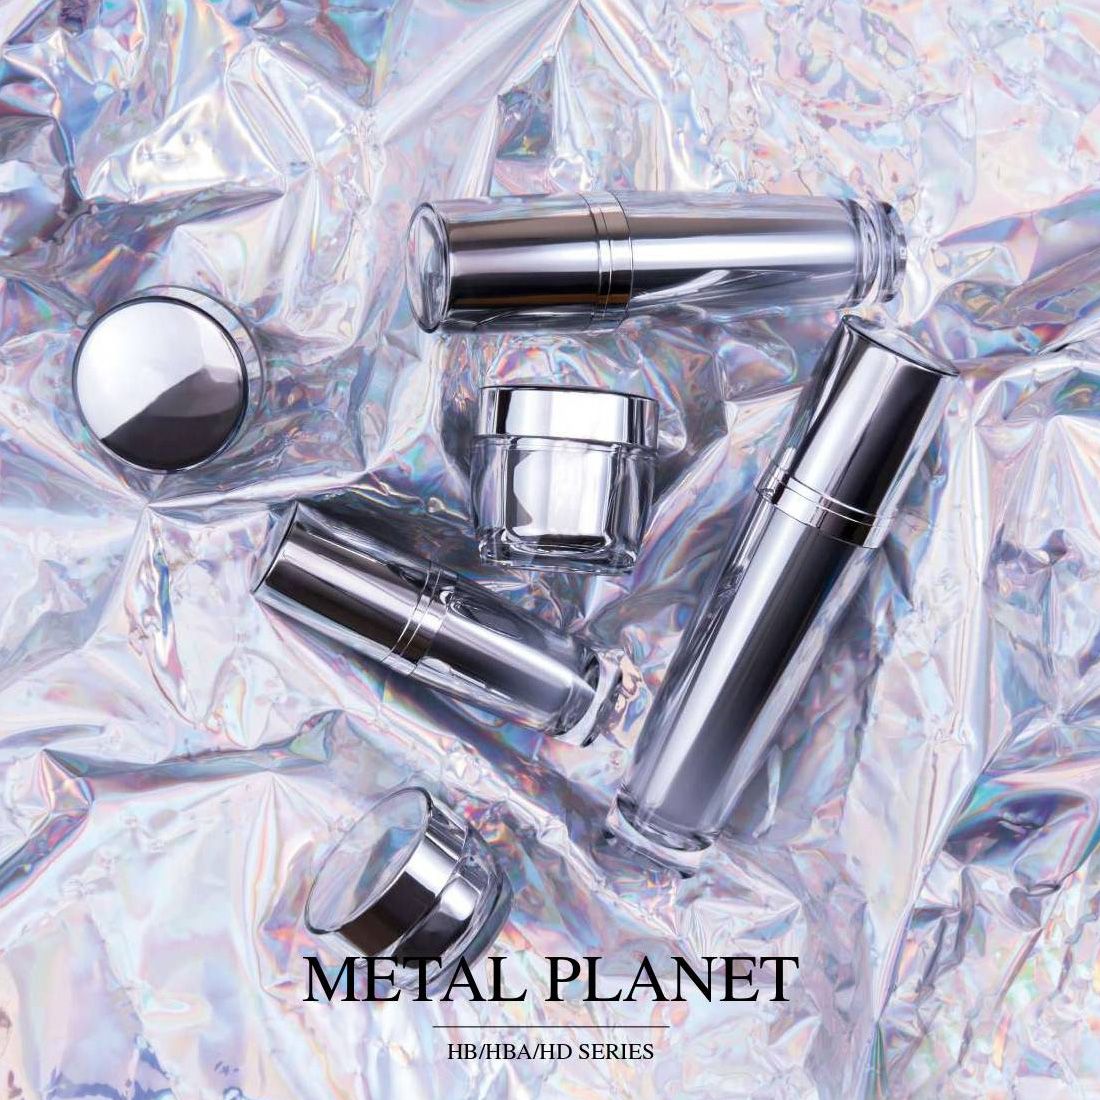 Metal Planet (Luxus-Kosmetik- und Hautpflegeverpackungen aus Acryl) - HB-/HBA-/HD-Serie